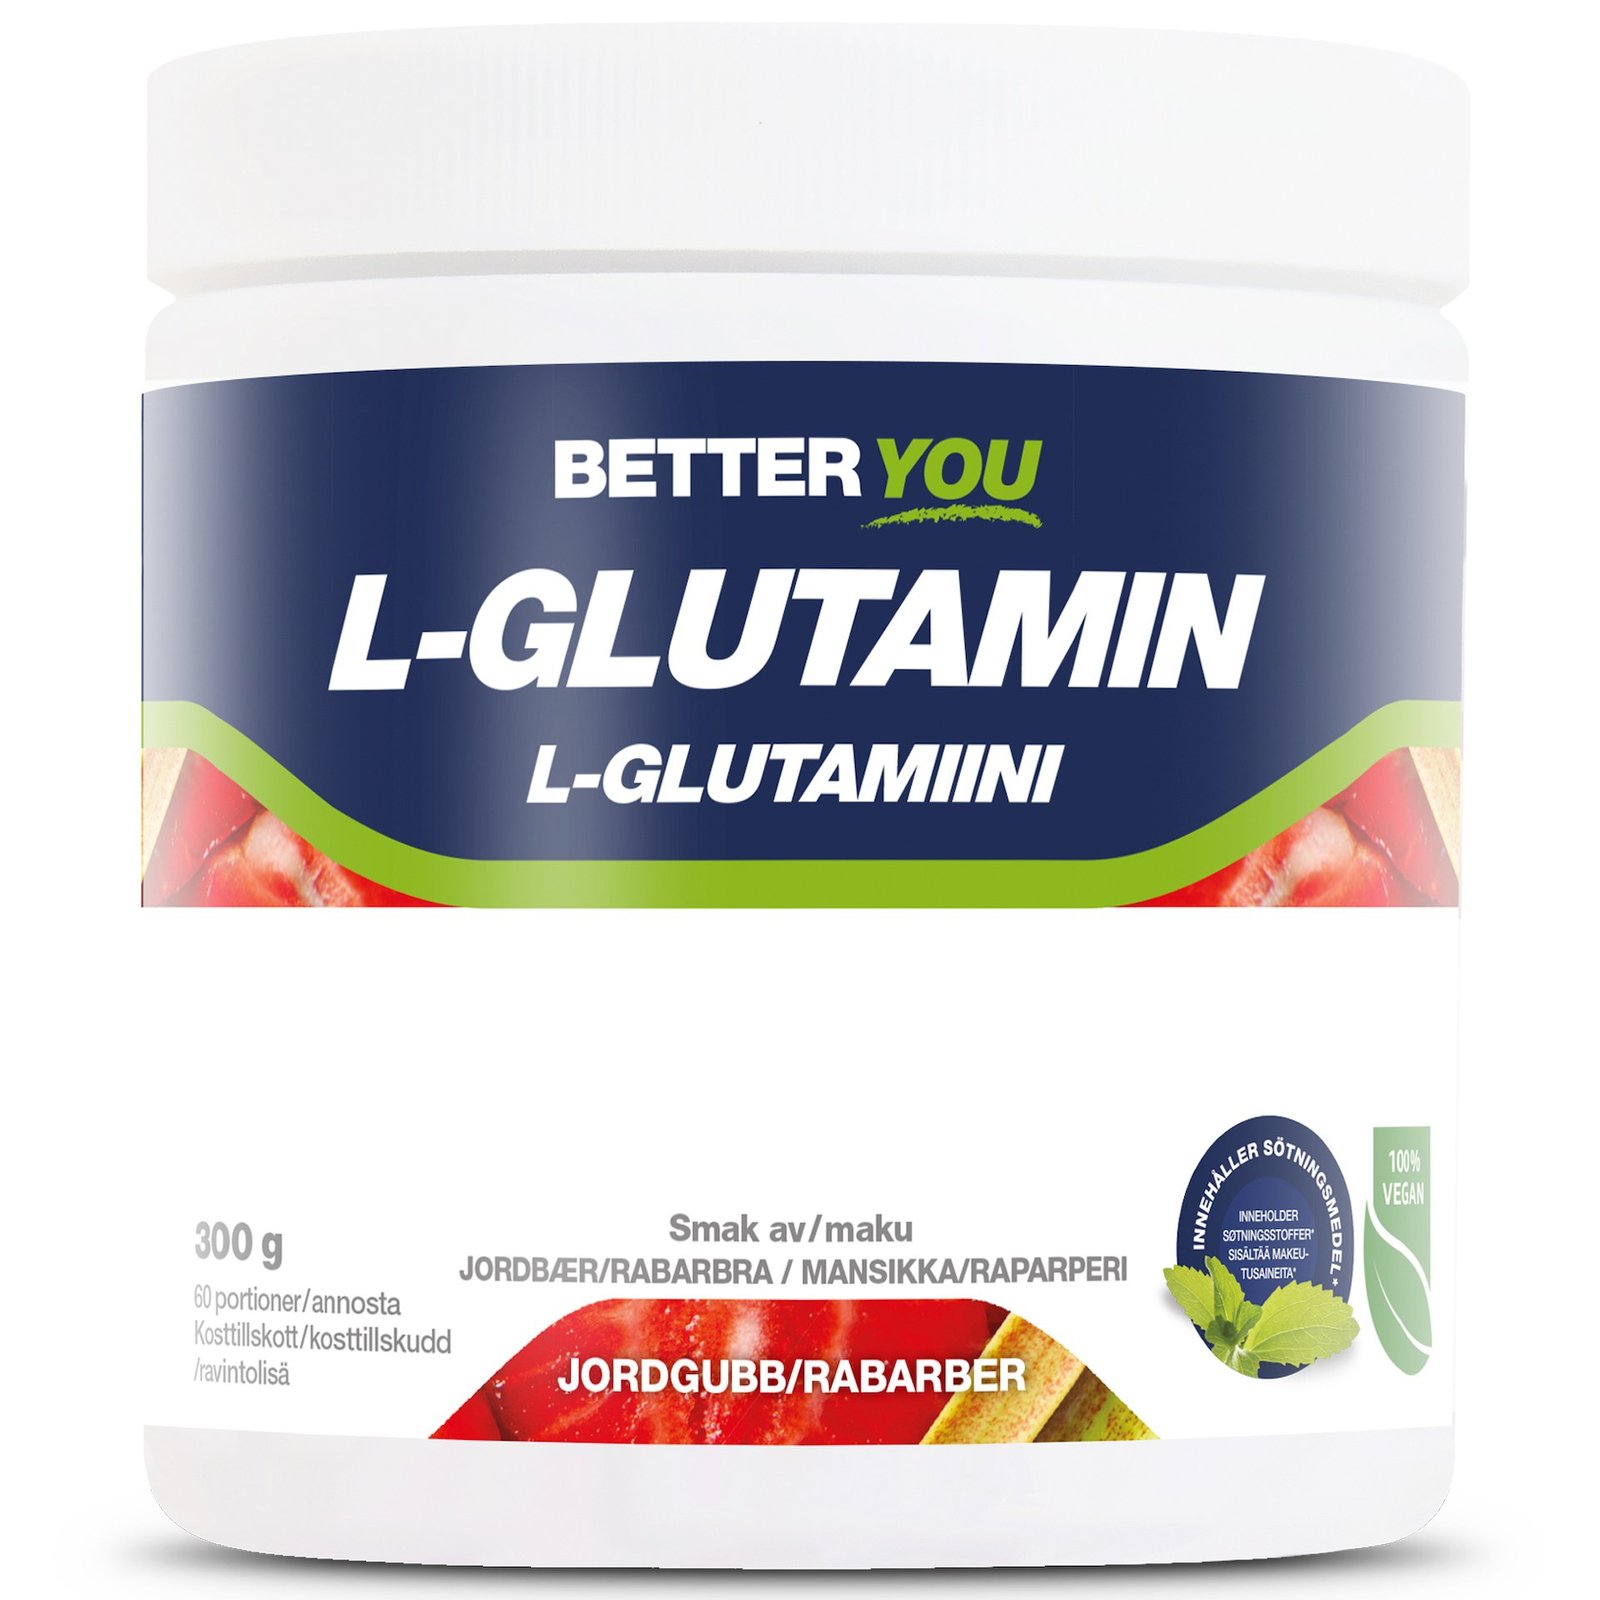 Better You Naturligt L-Glutamin 300 g - Jordgubb/Rabarber